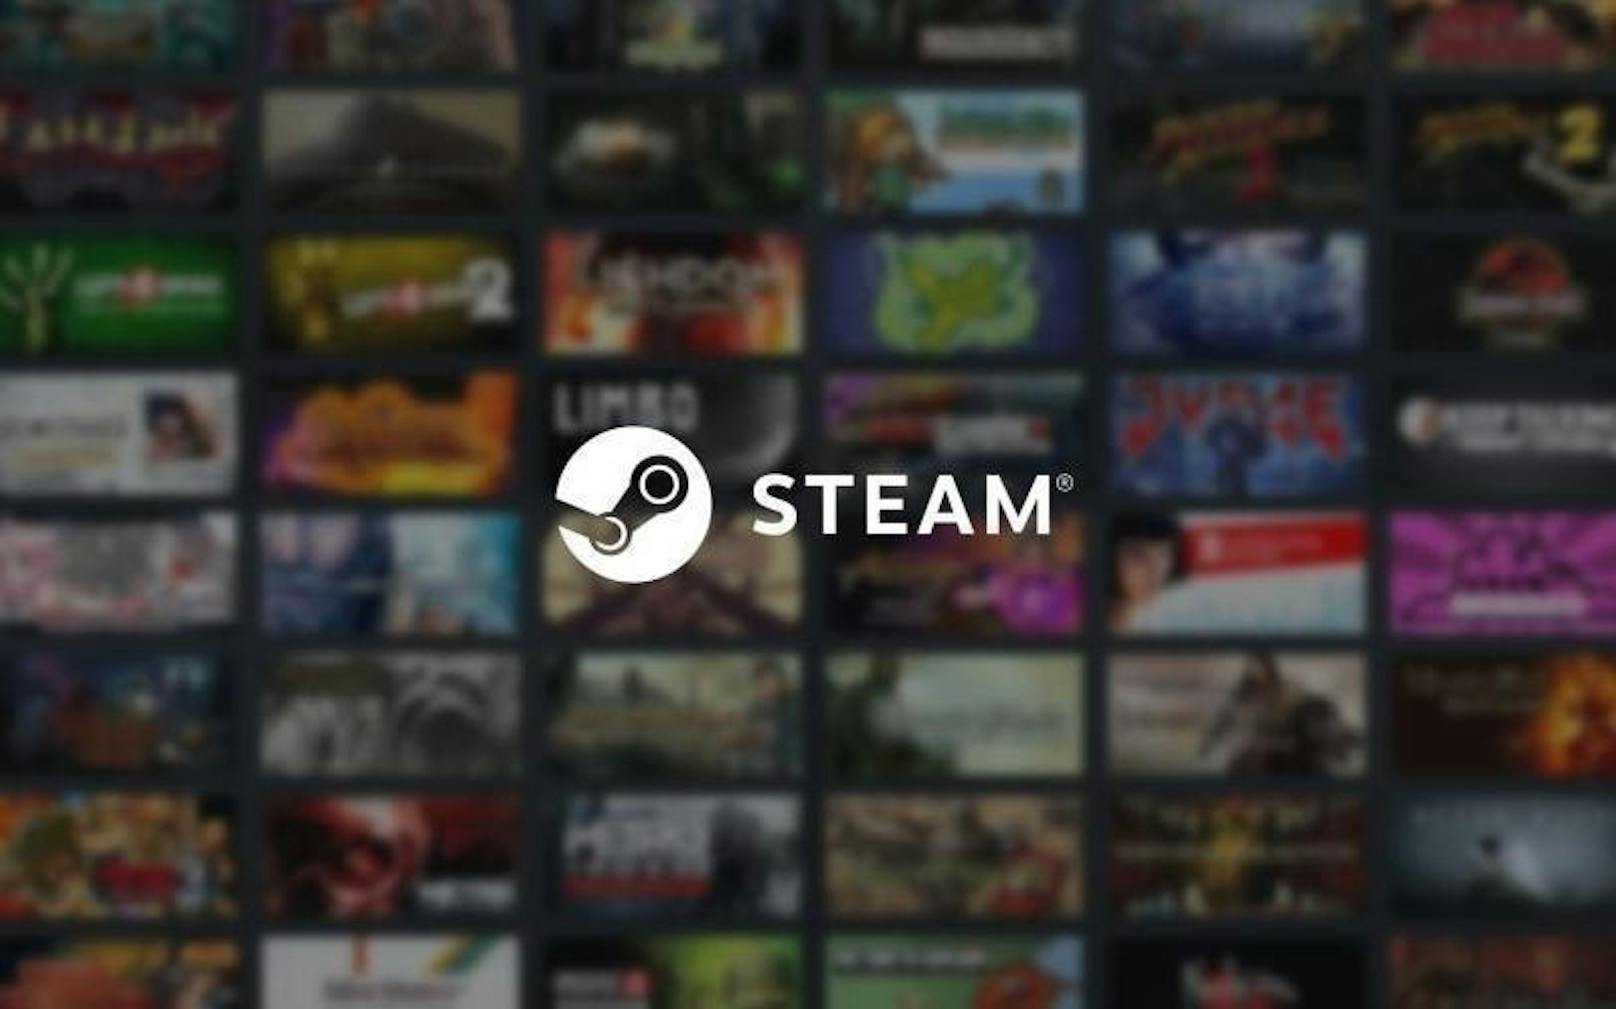 Ein Fehler bei Steam.com ermöglichte kostenlose Game-Downloads. Der Sicherheitsforscher Artem Moskowsky hat die gravierende Lücke ...